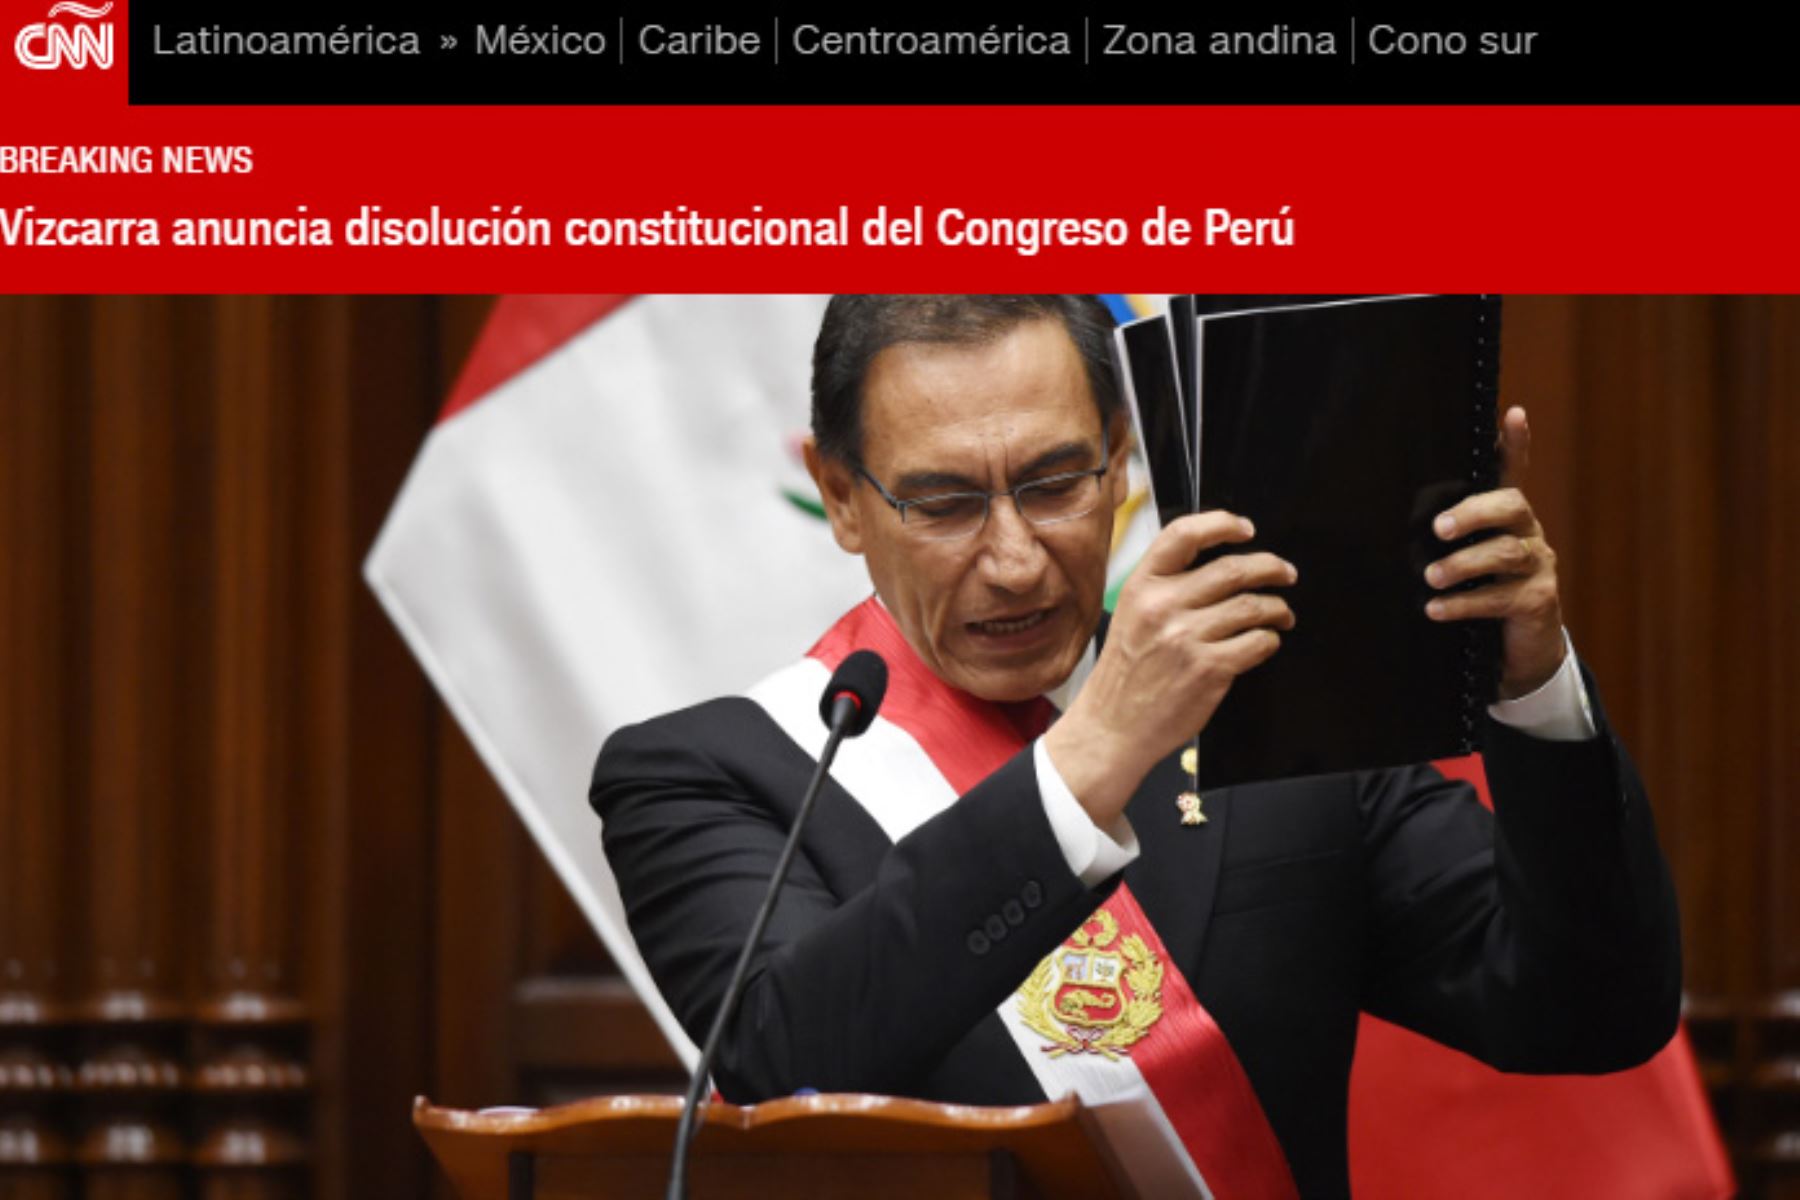 Así informó CNN Español la decisión del presidente Martín Vizcarra de disolver constitucionalmente el Congreso de la República.